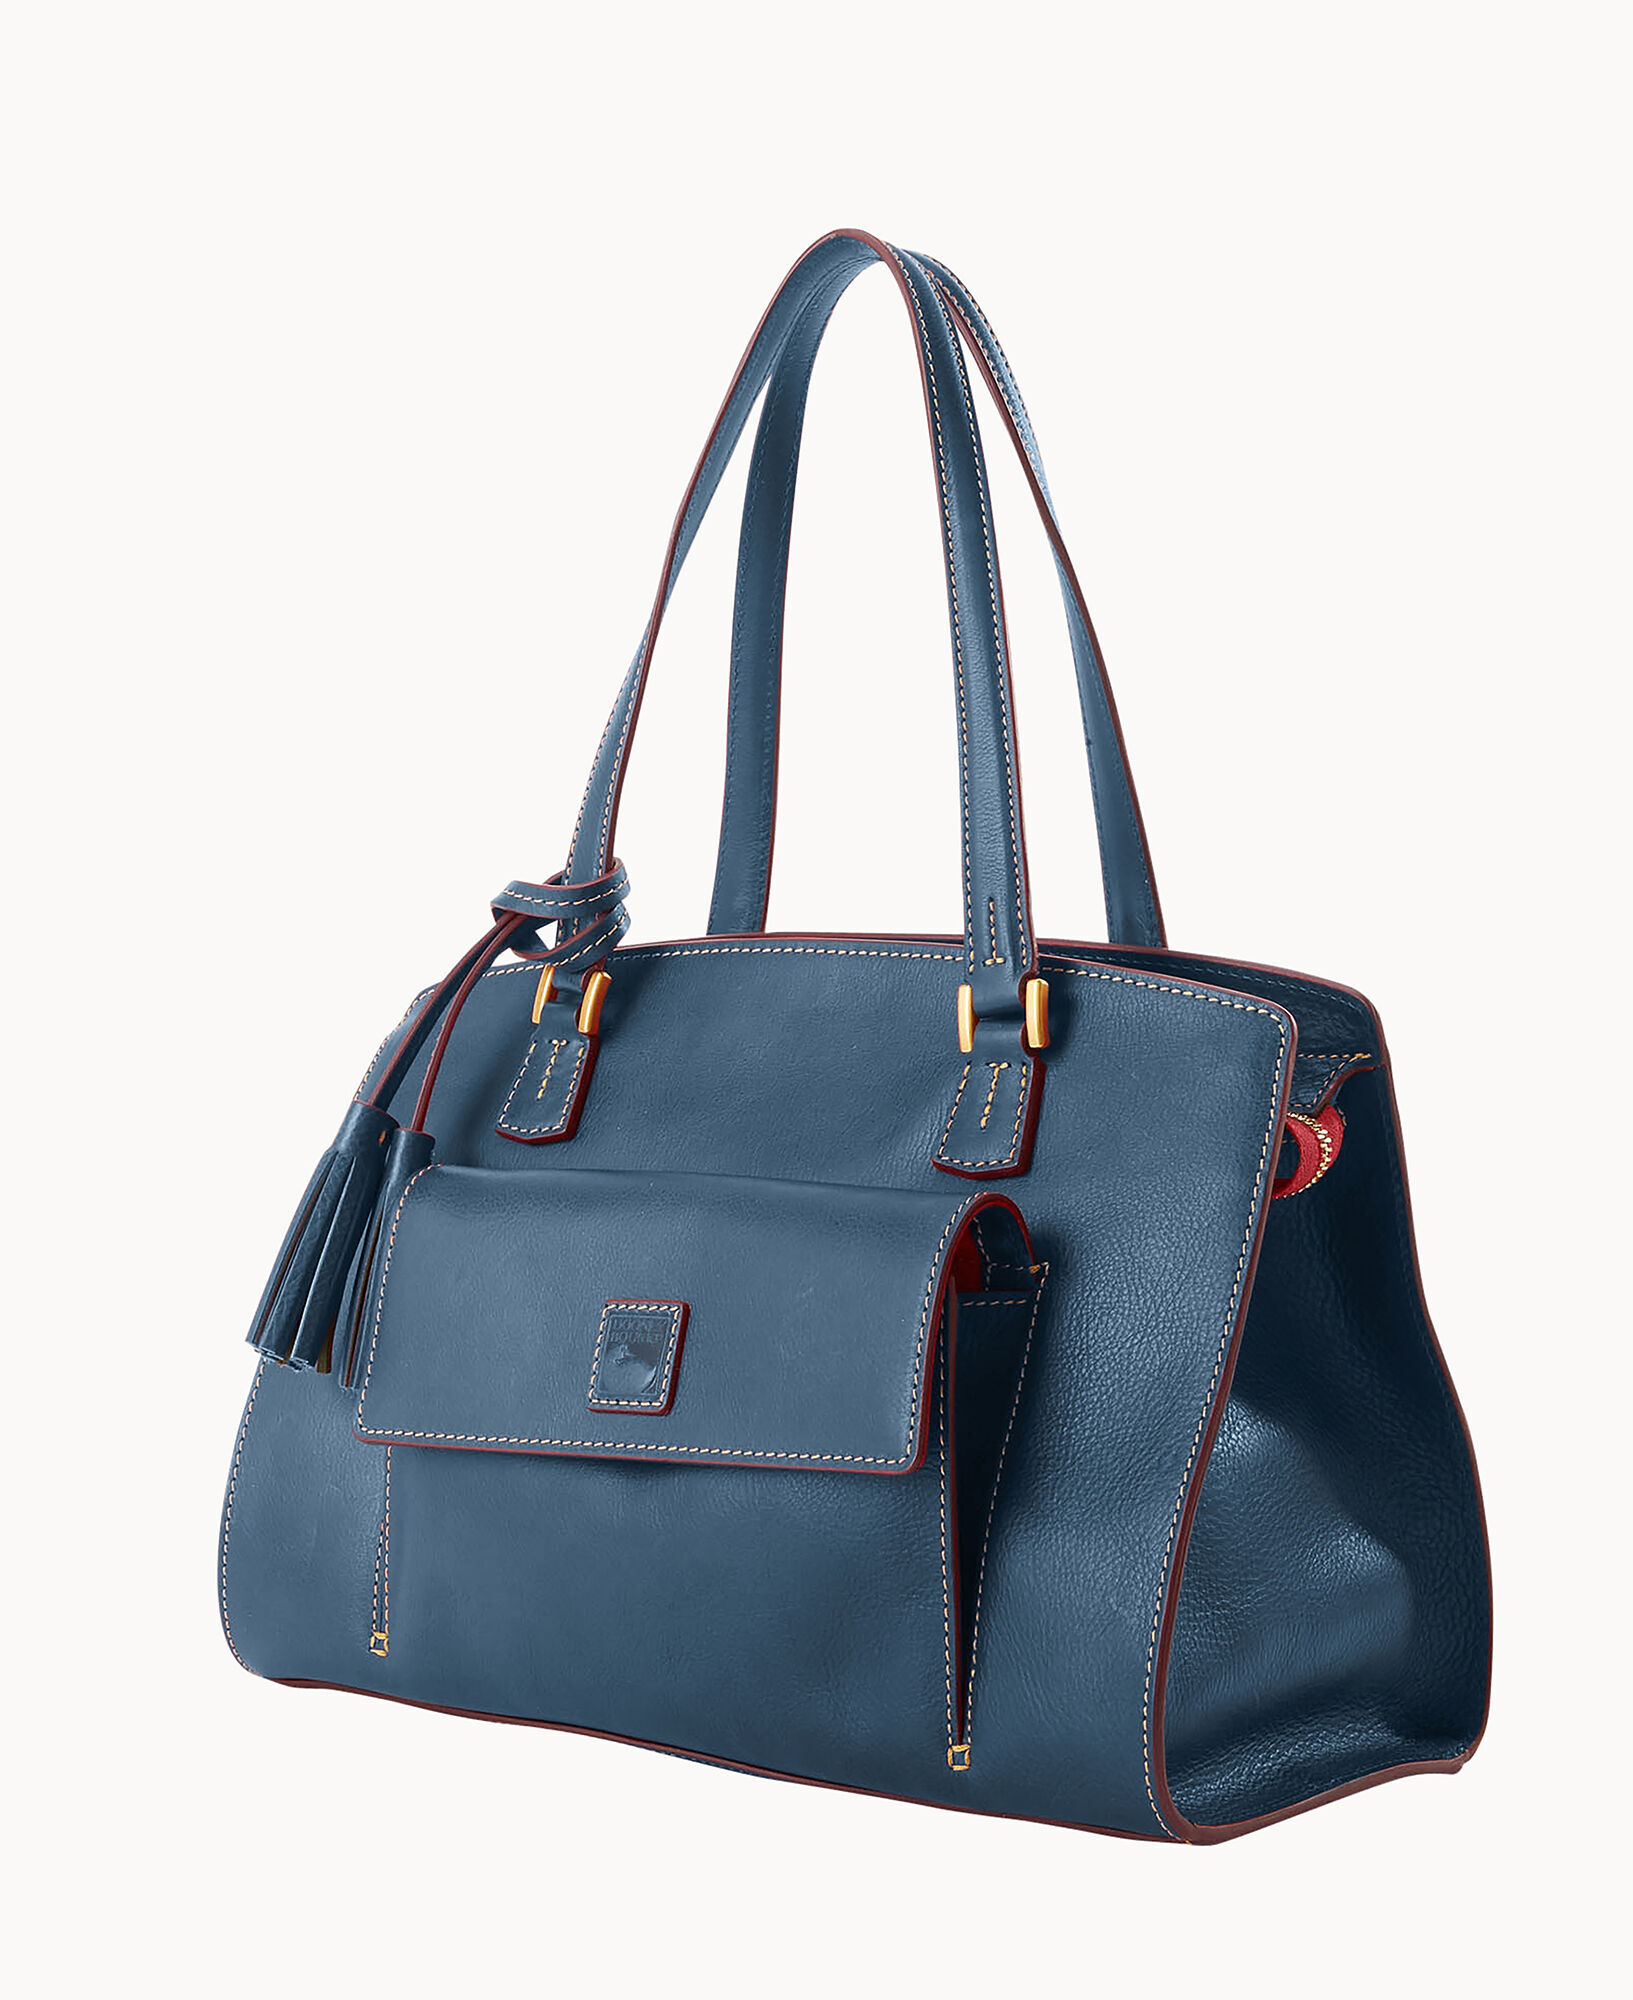 Dooney & Bourke Florentine Shoulder Bag